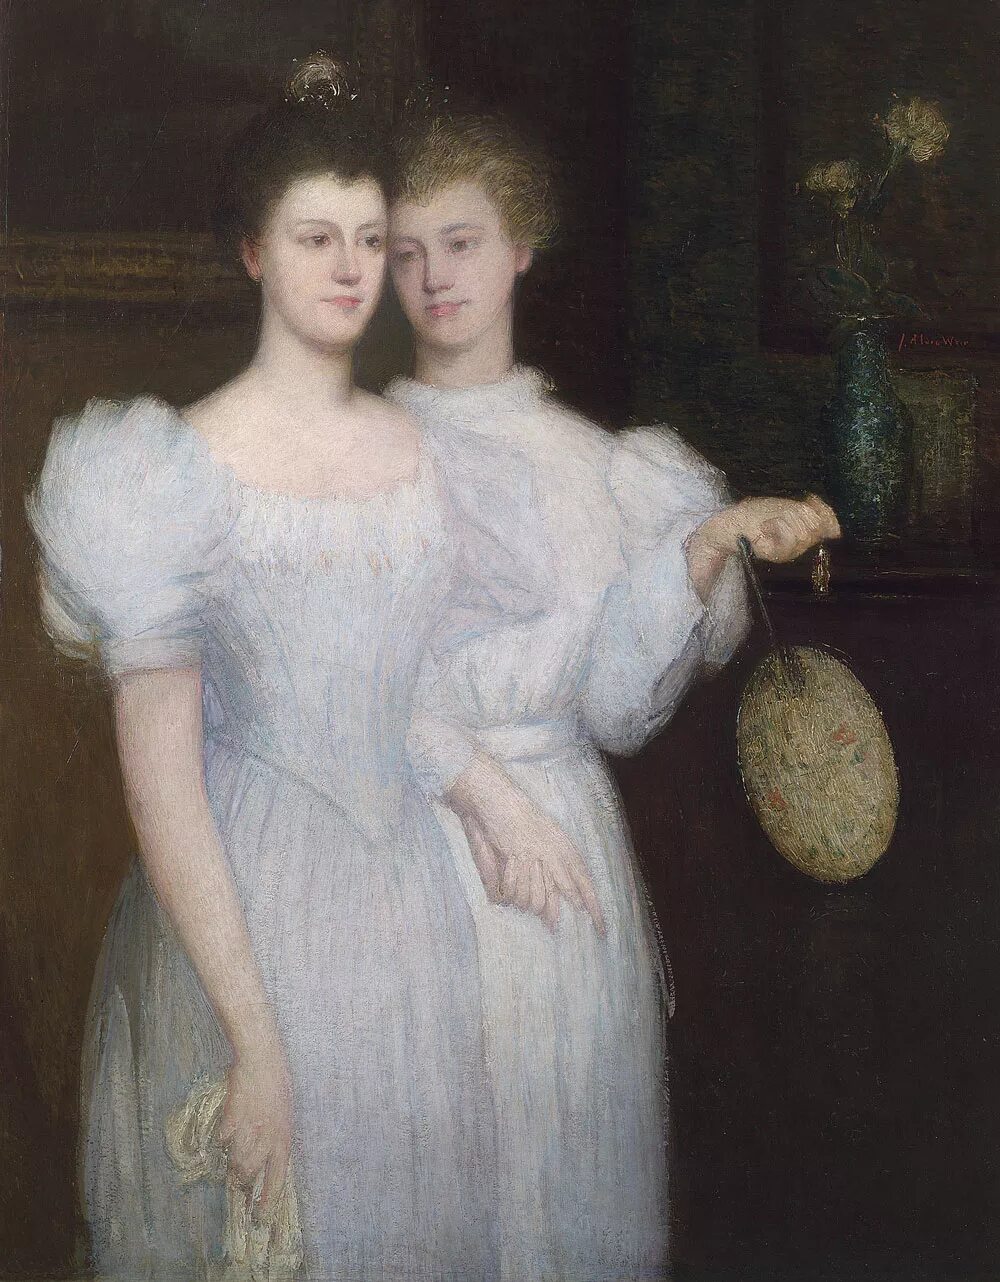 Two sisters old. Джулиан Олден Вейр. Джулиан Олден Вейр художник. Джулиан Олден Вейр (американский художник -1852-1919. Джон Вейр 1852-1919.